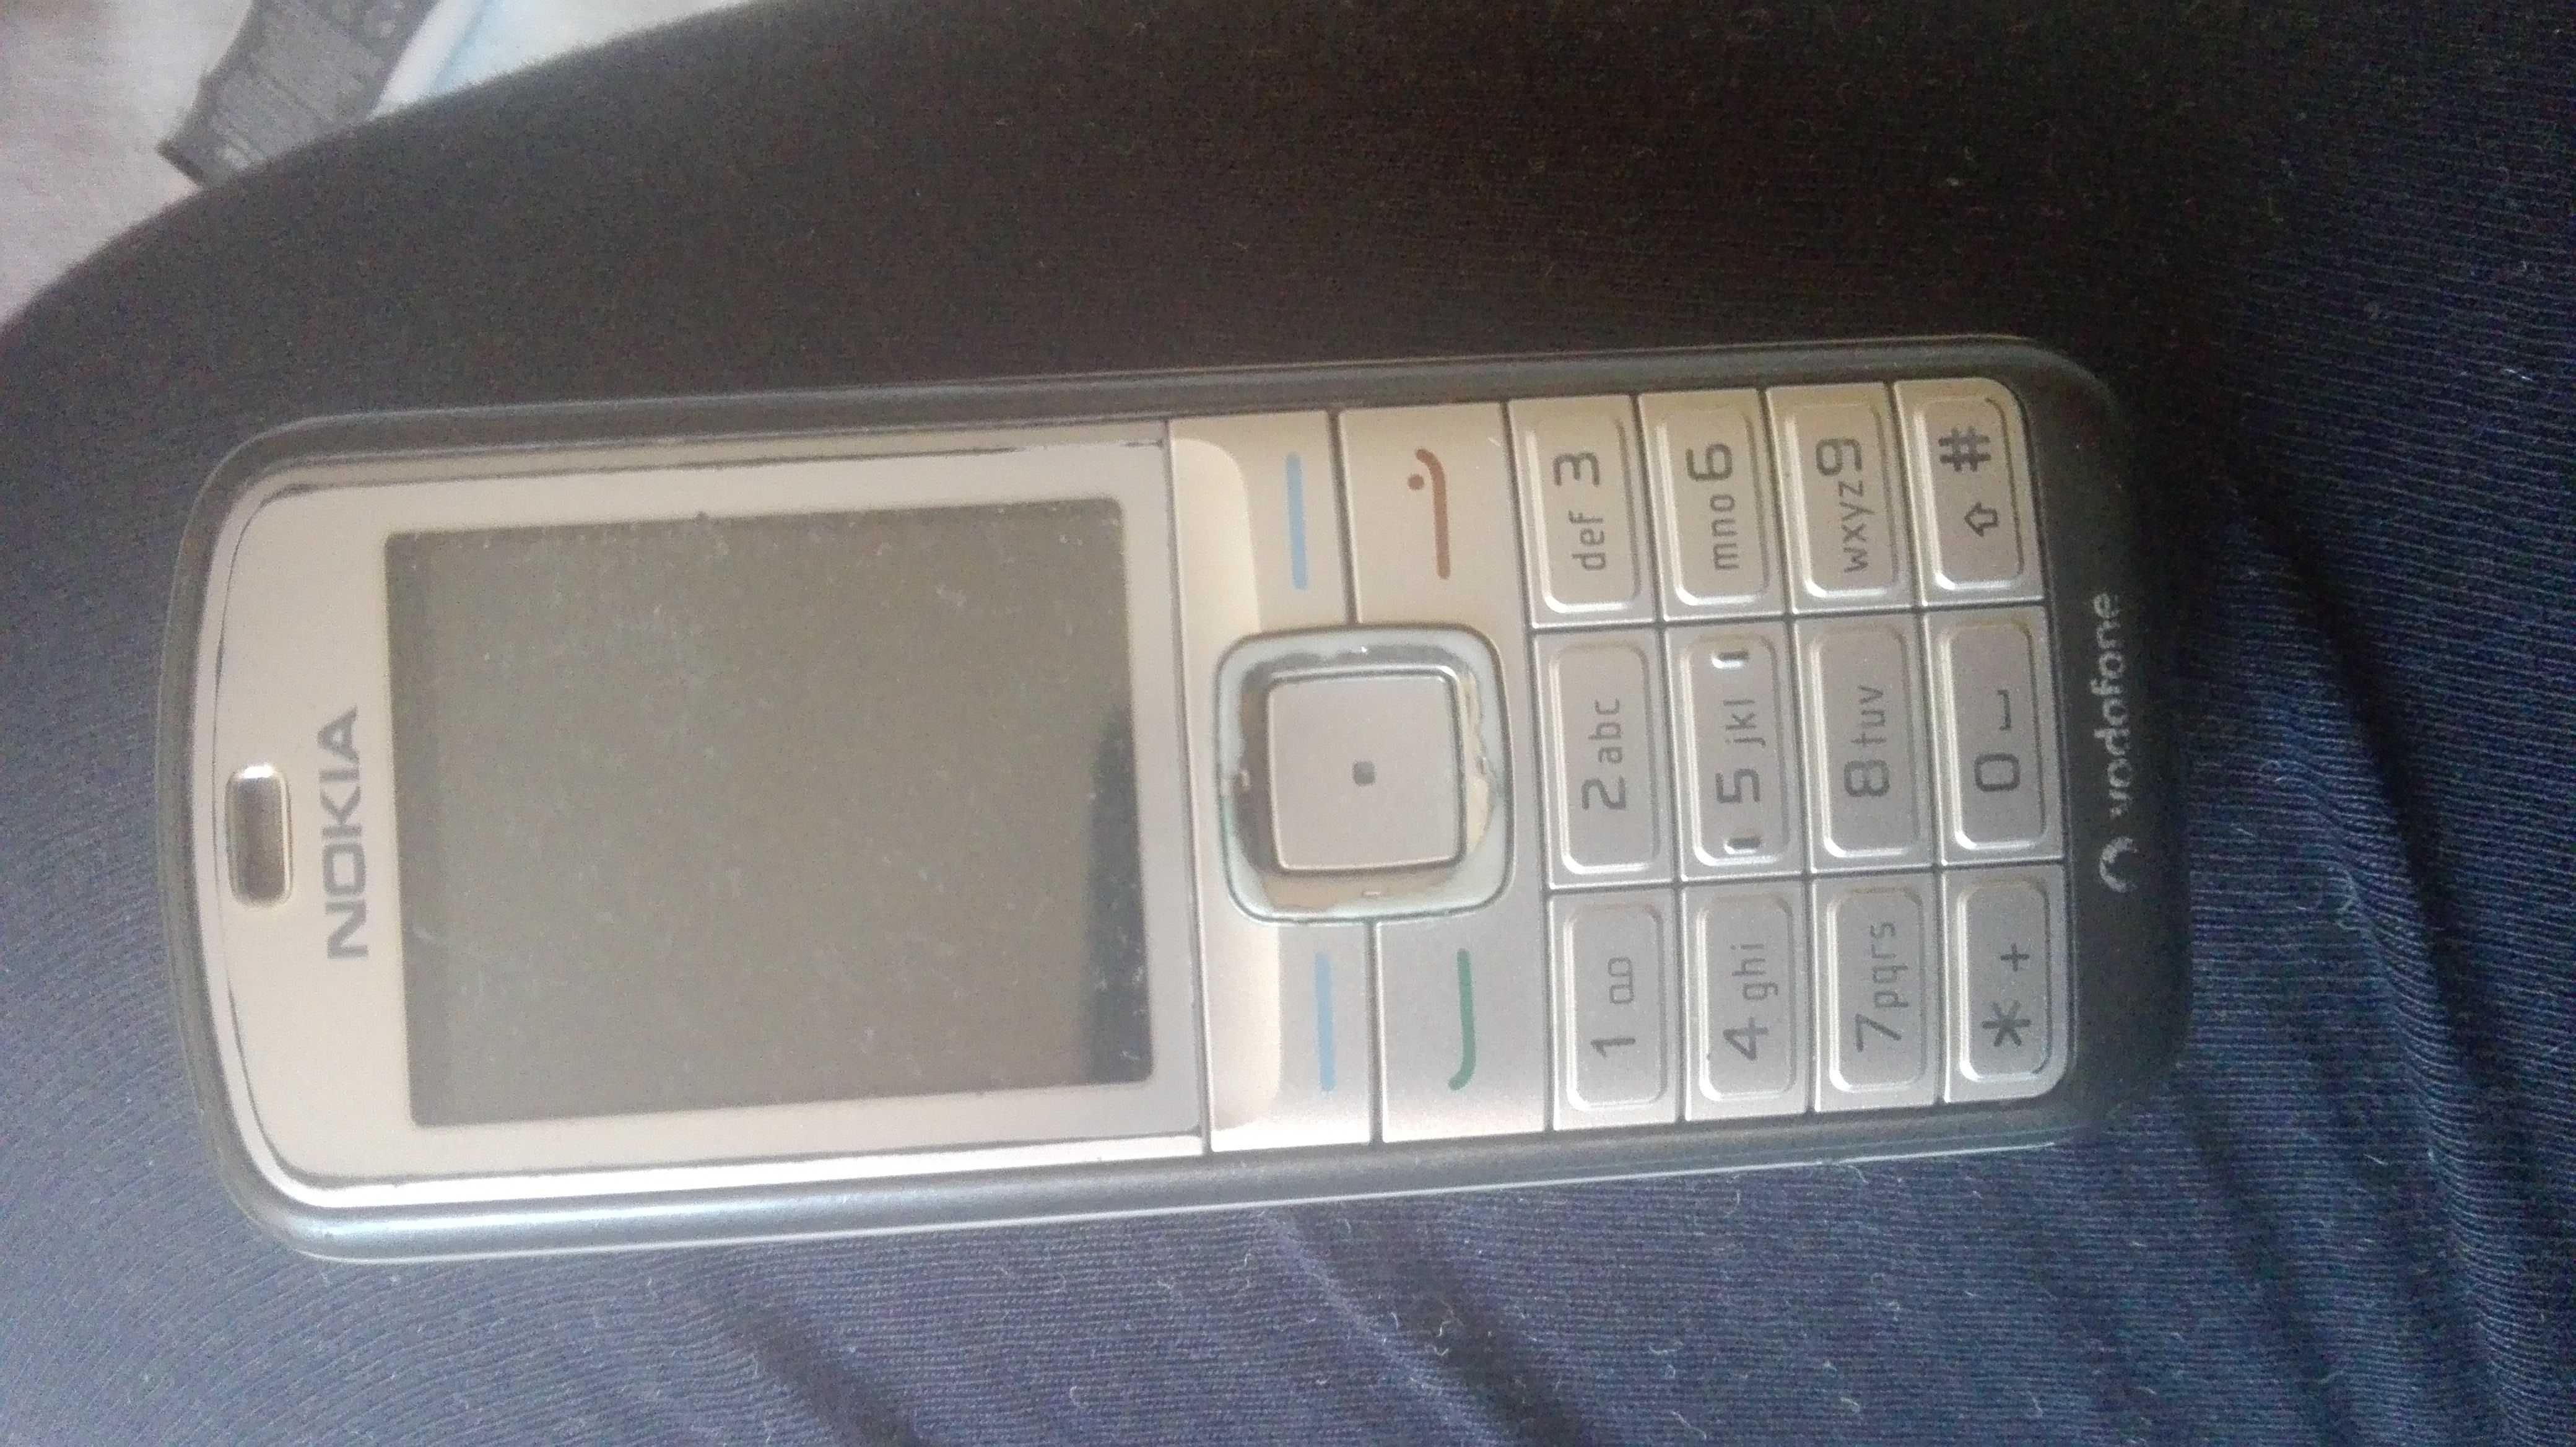 Telefoane Nokia 6070 pentru colecție sau folosire